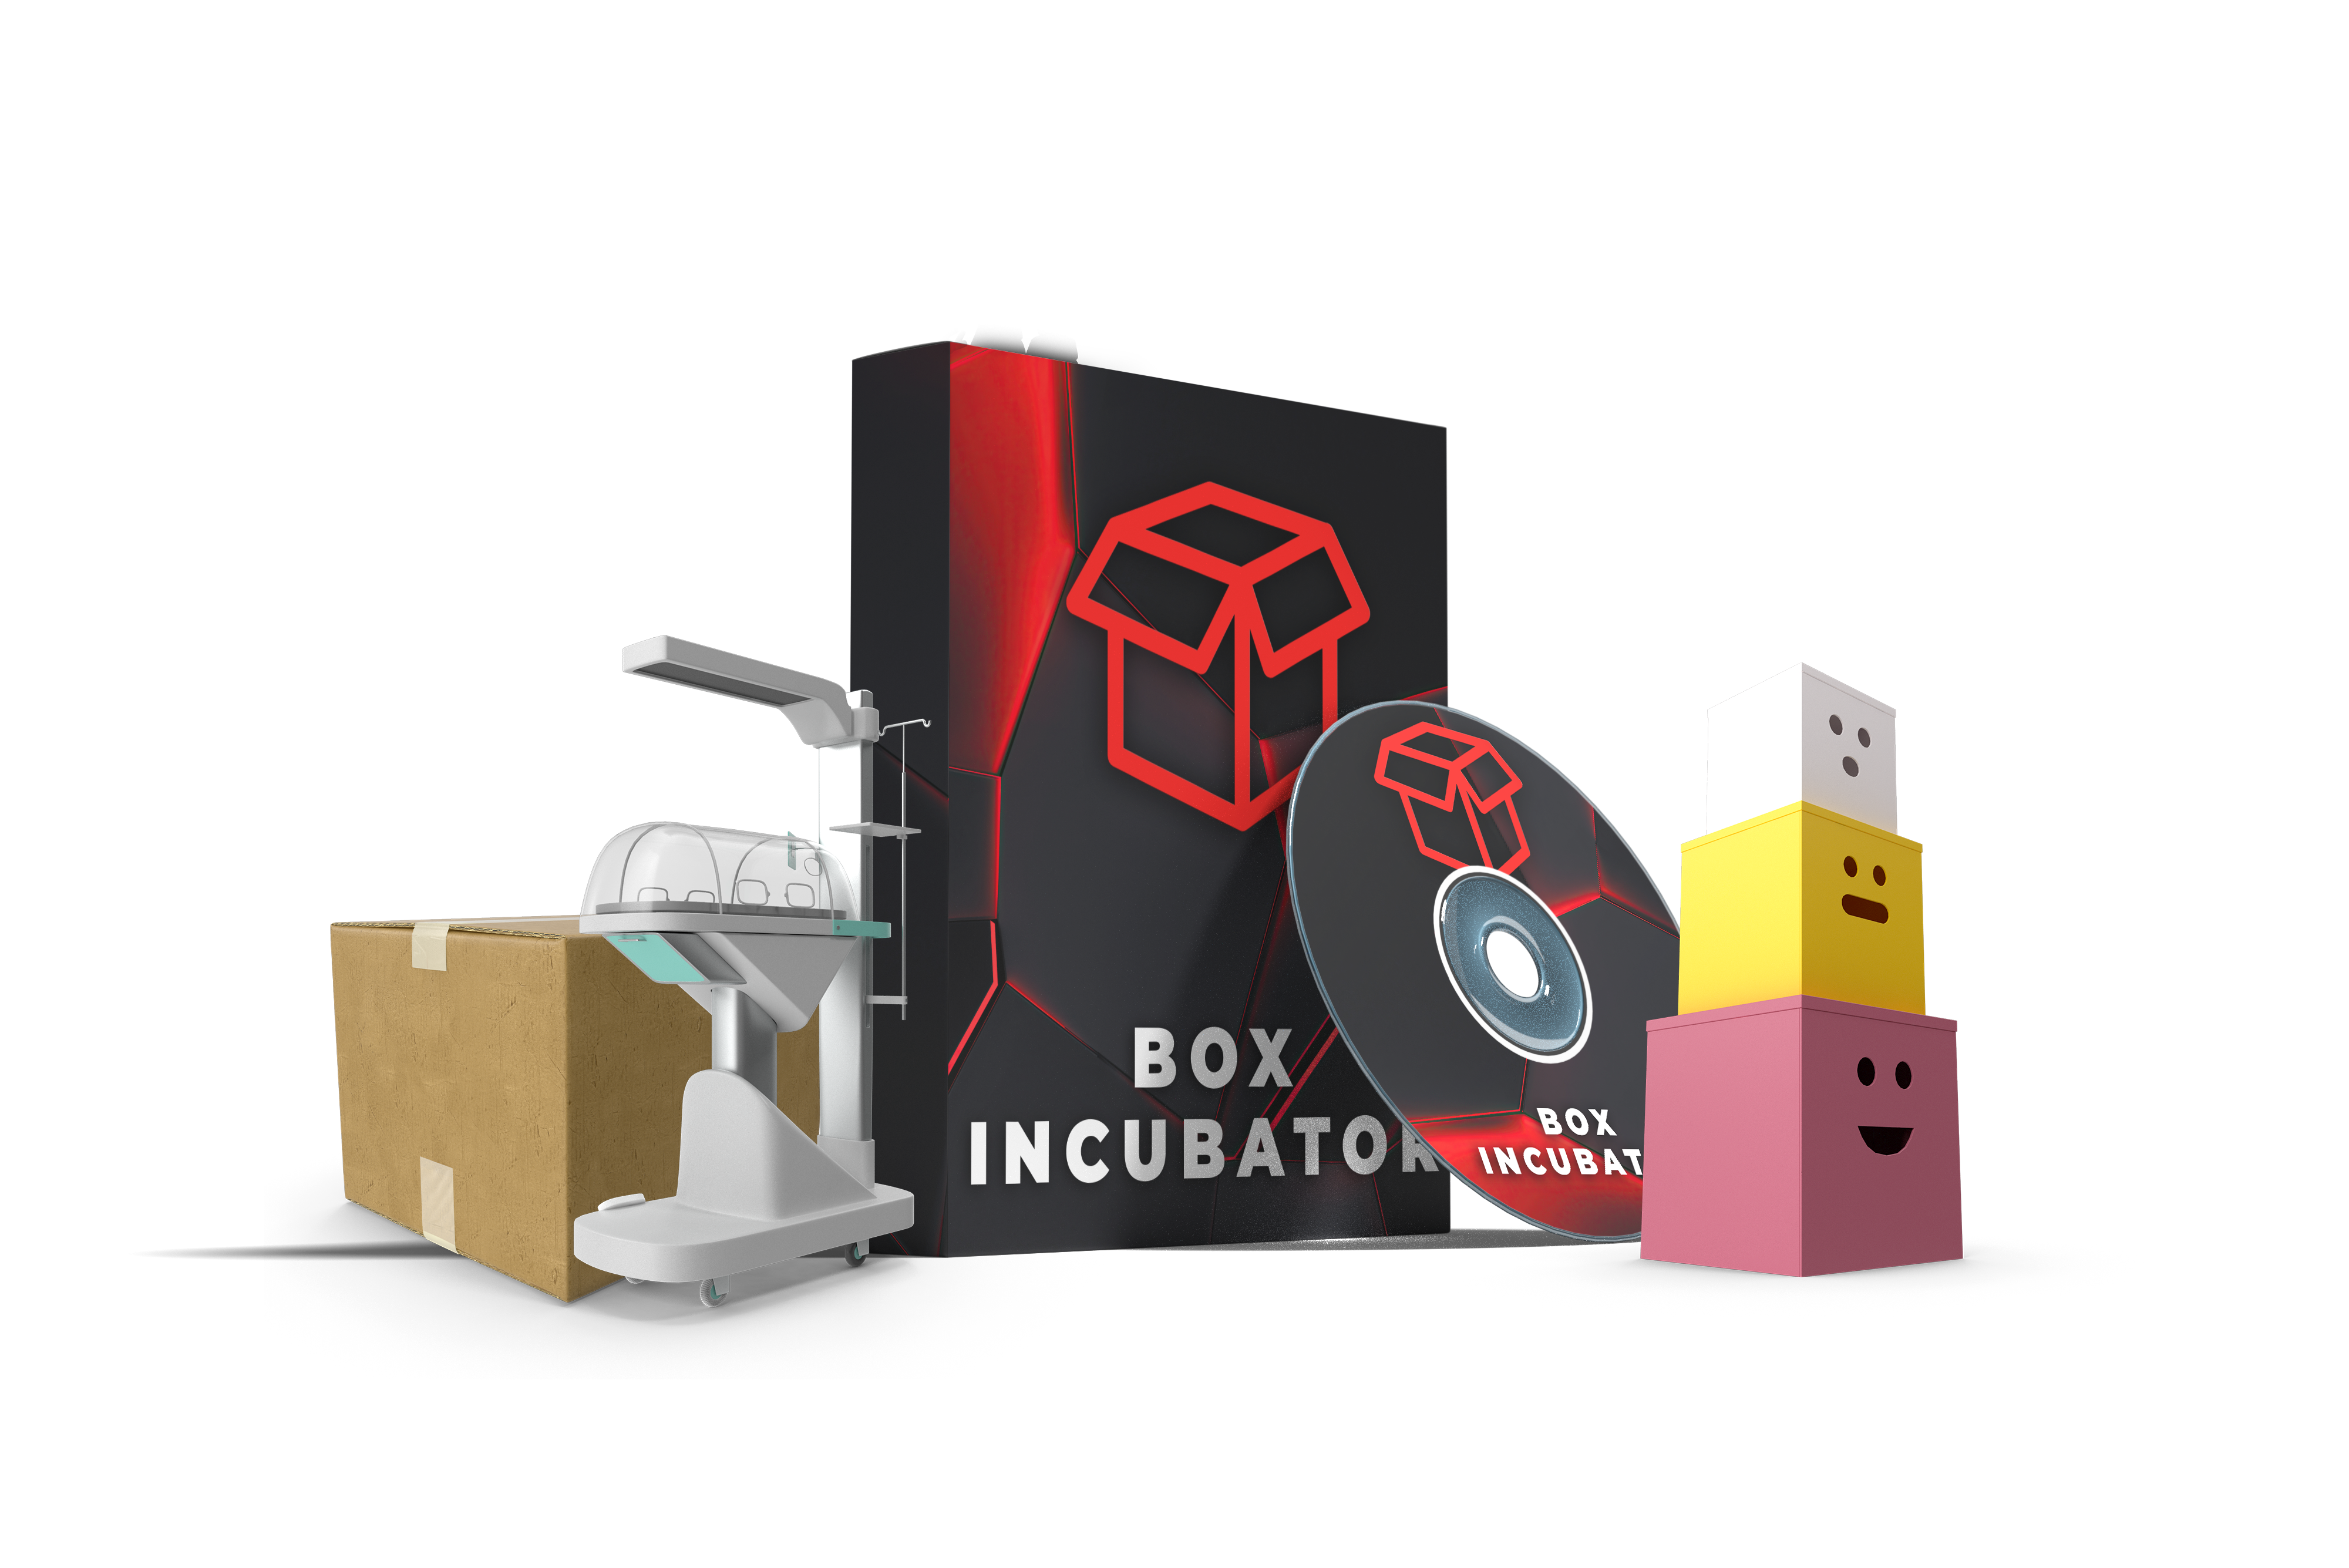 box incubator